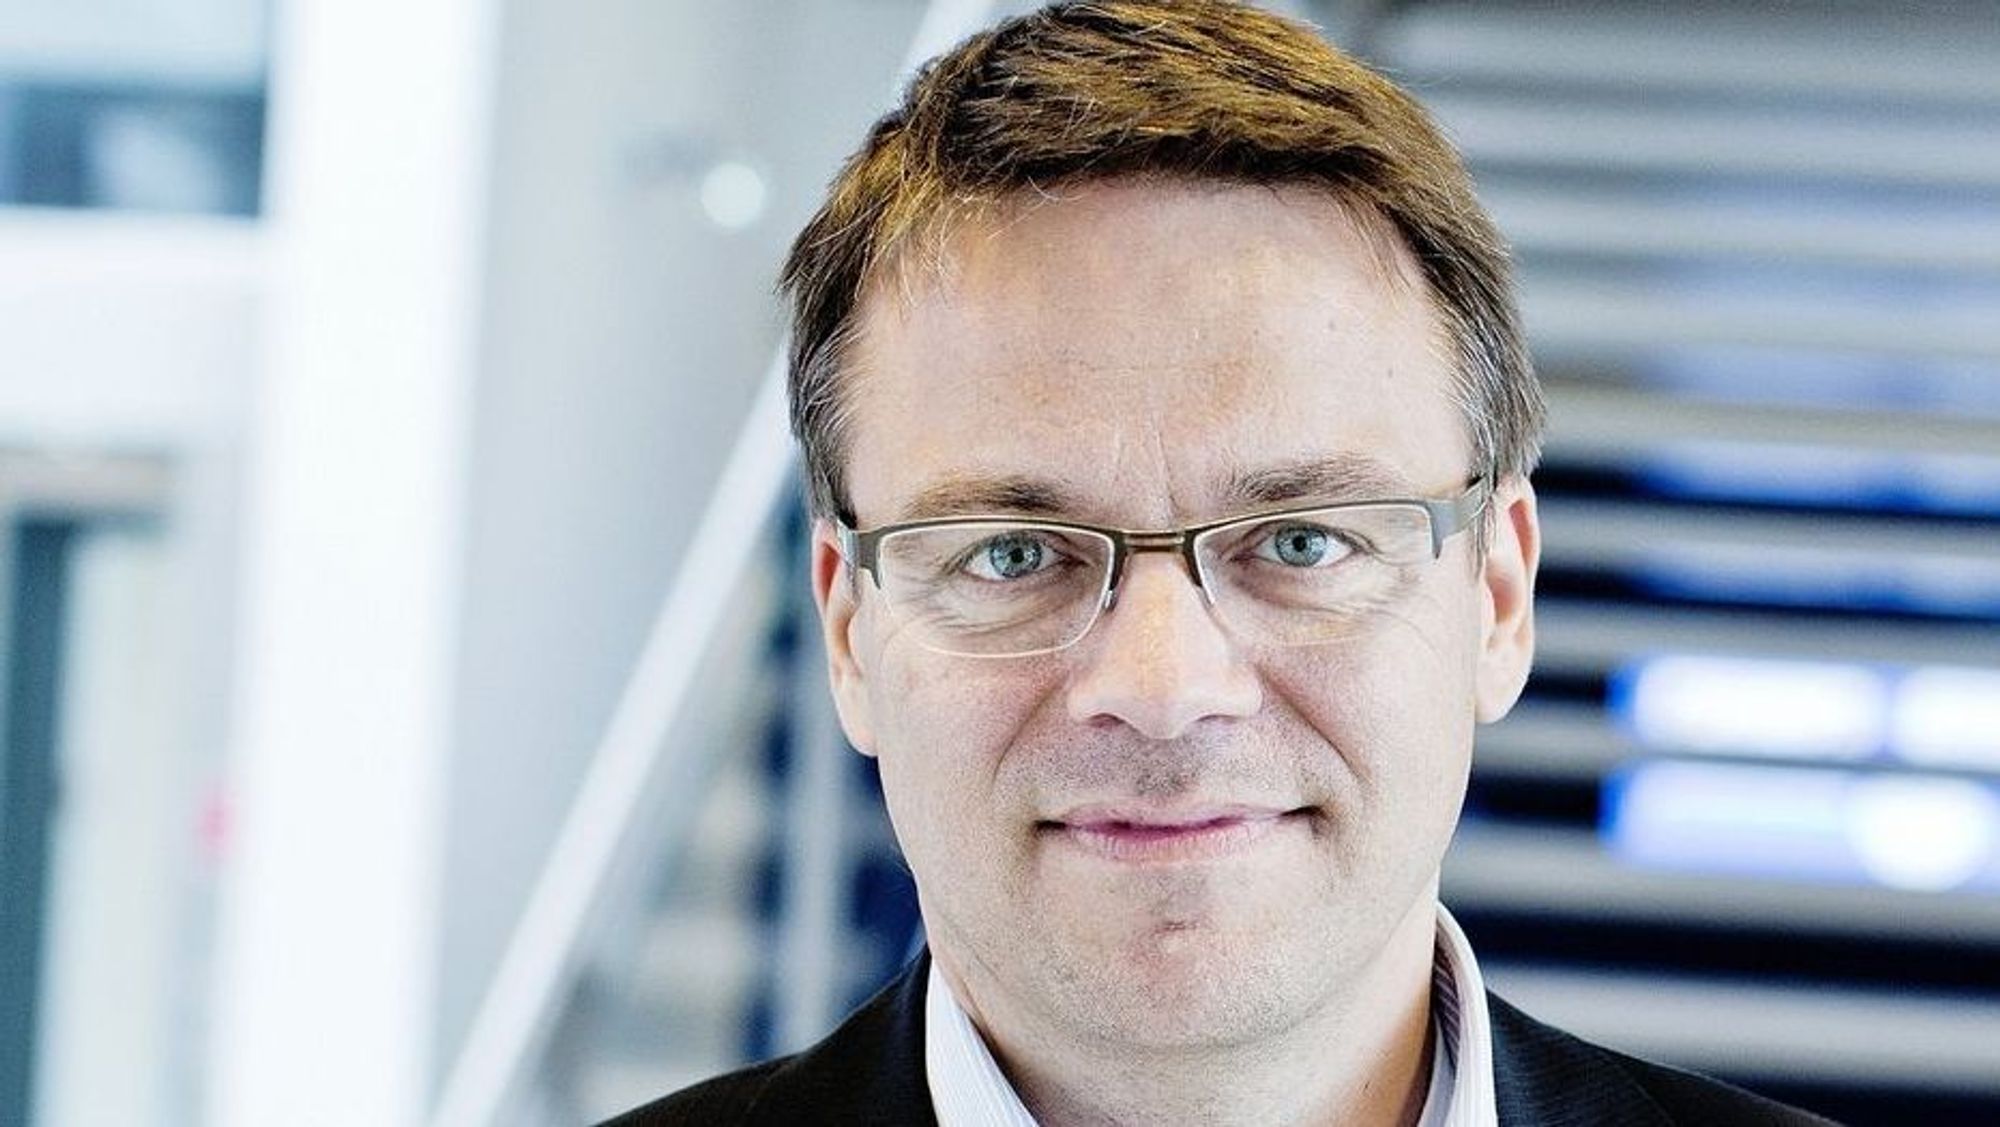 Broadnet-sjef Martin Lippert har omorganisert selskapet etter sammenslåingen med Globalconnect. I tillegg til Homenet-sjef Nina Vesterby, forlater også direktørene Torbjørn G. Krøvel og strategidirektør Christian Brunhøj selskapet.